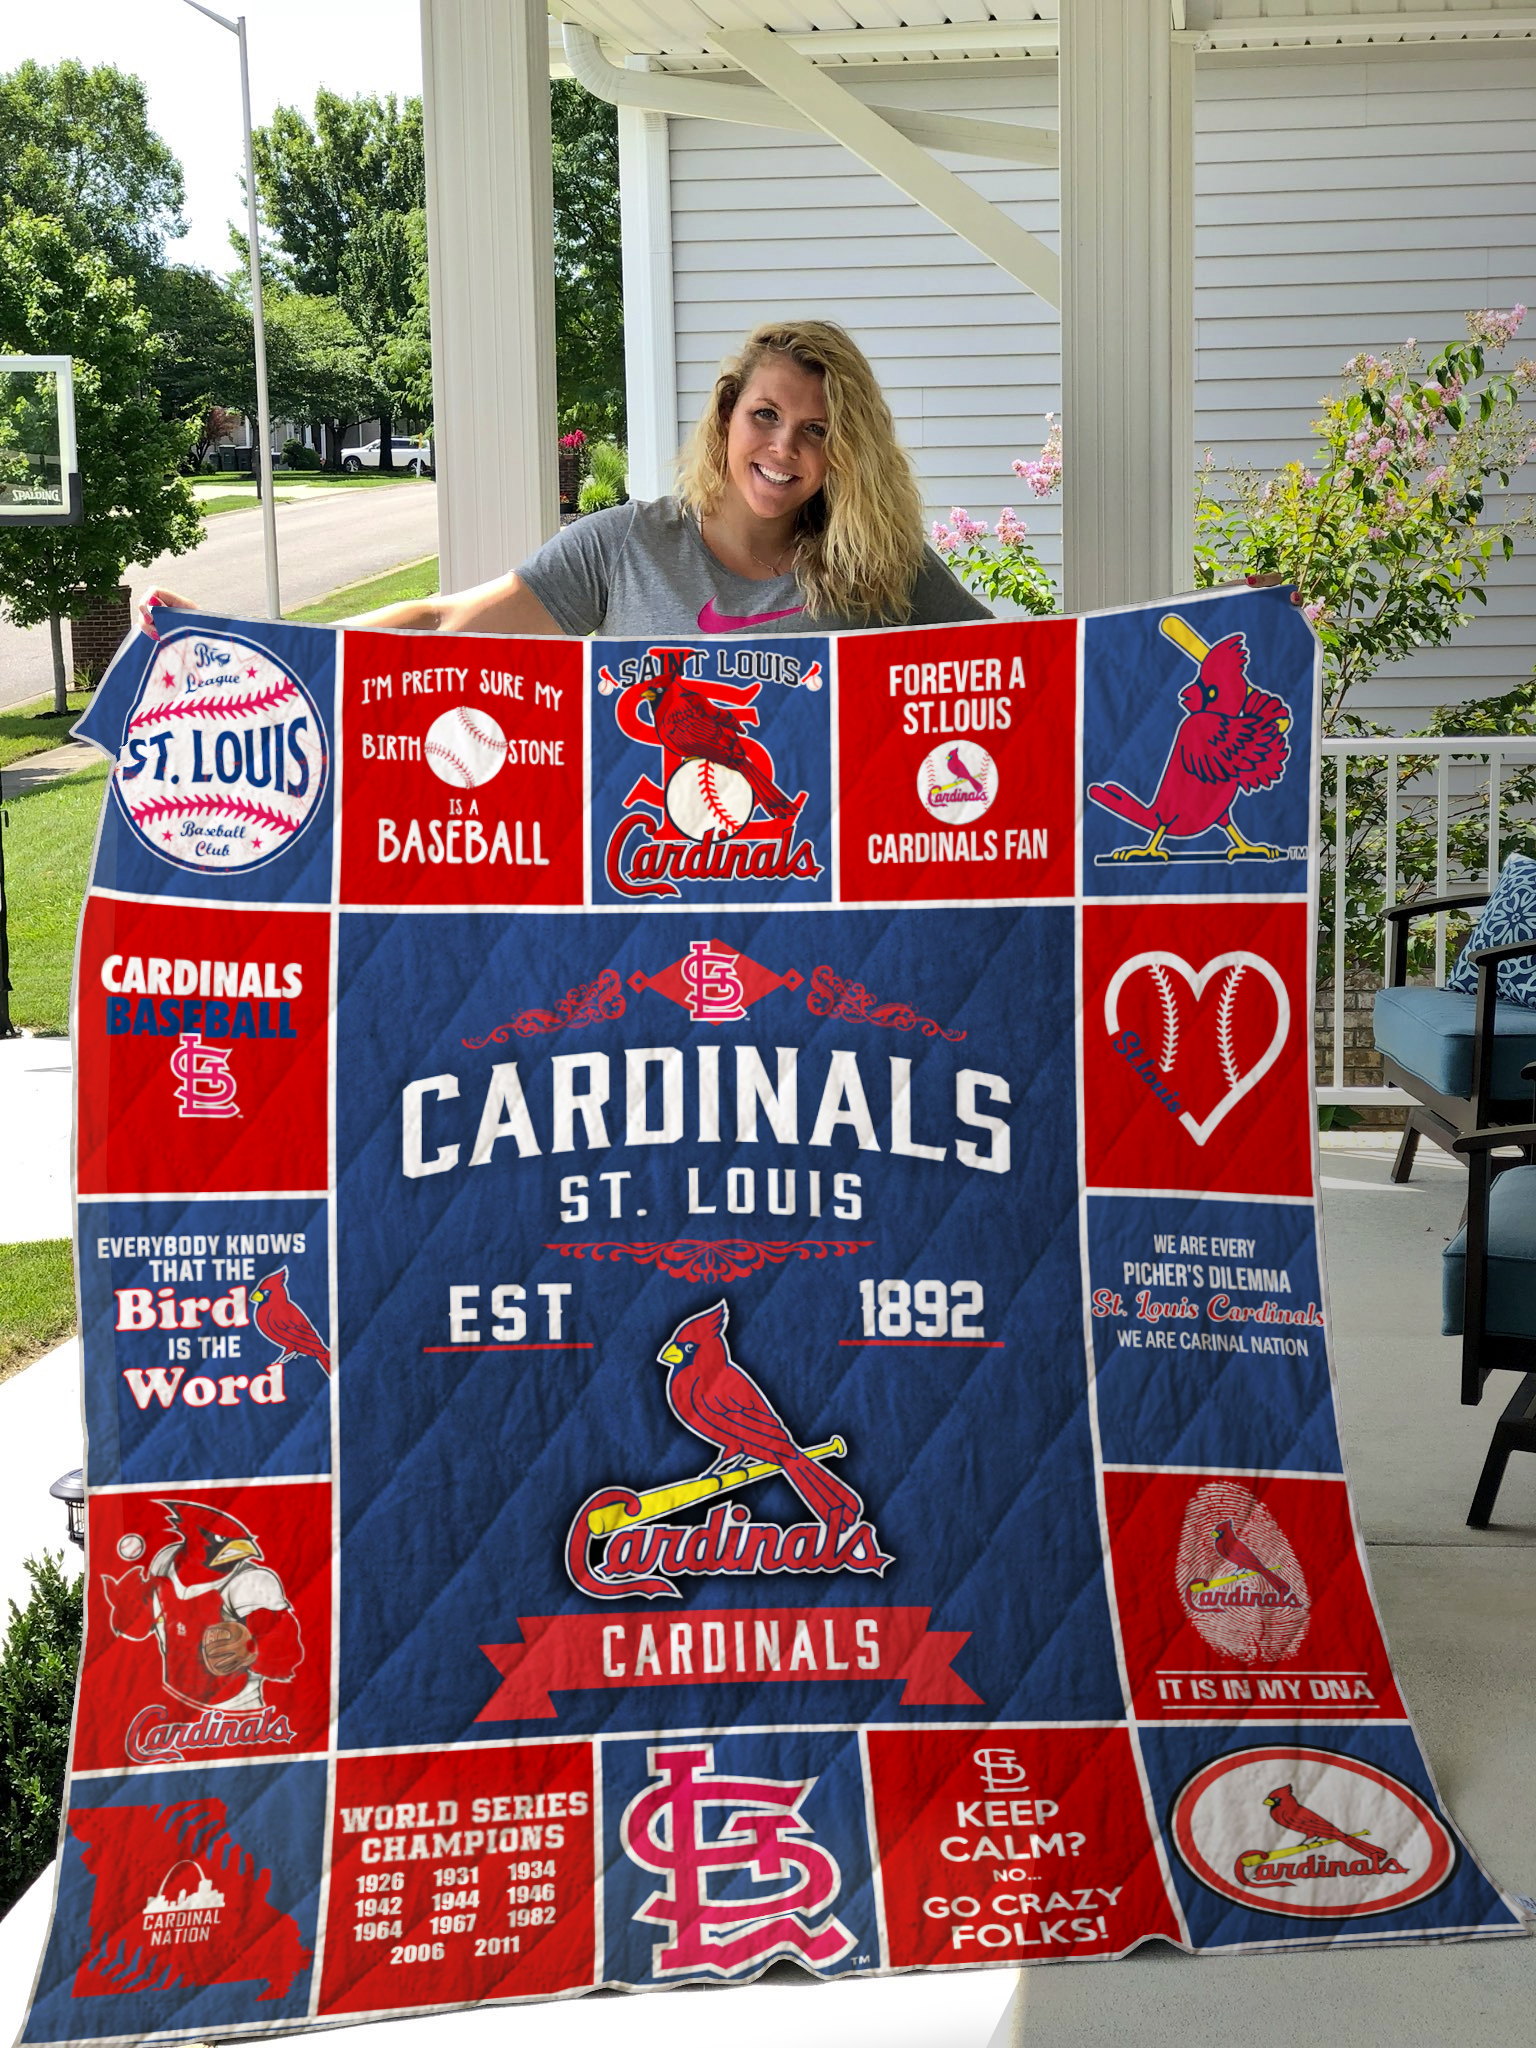 St. Louis Cardinals Size 4XL MLB Fan Apparel & Souvenirs for sale